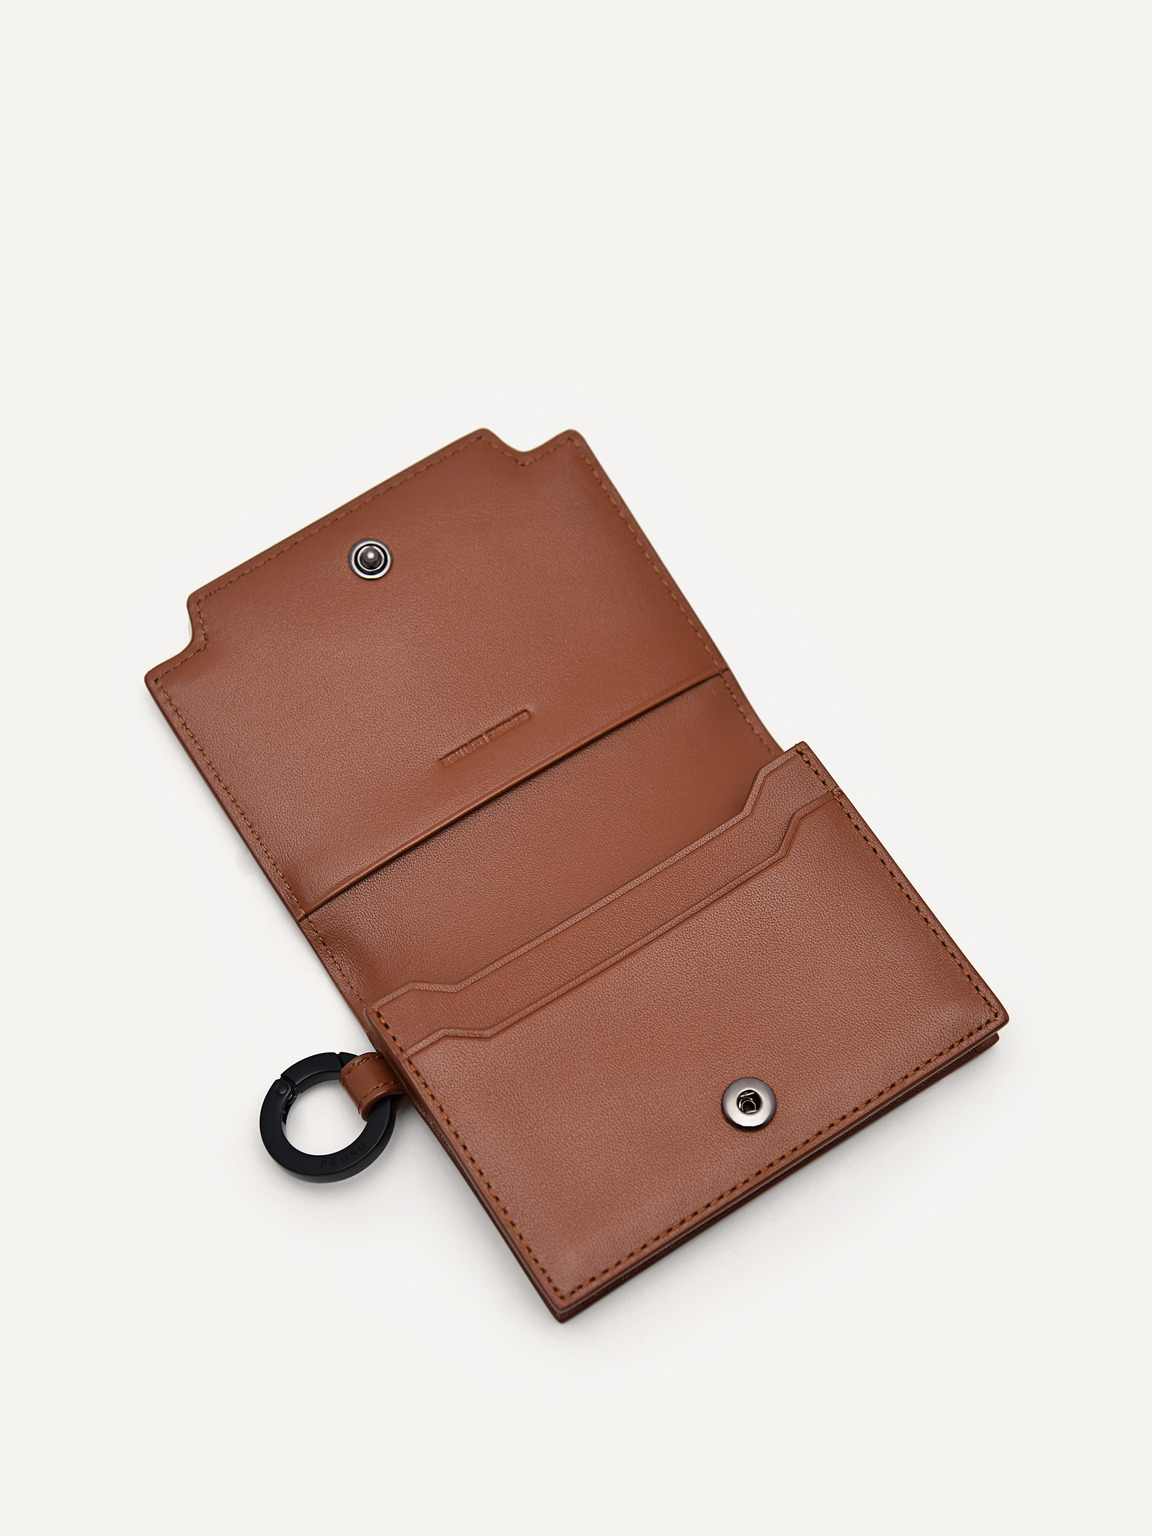 皮革雙折疊卡包帶鑰匙扣, 浅棕褐色